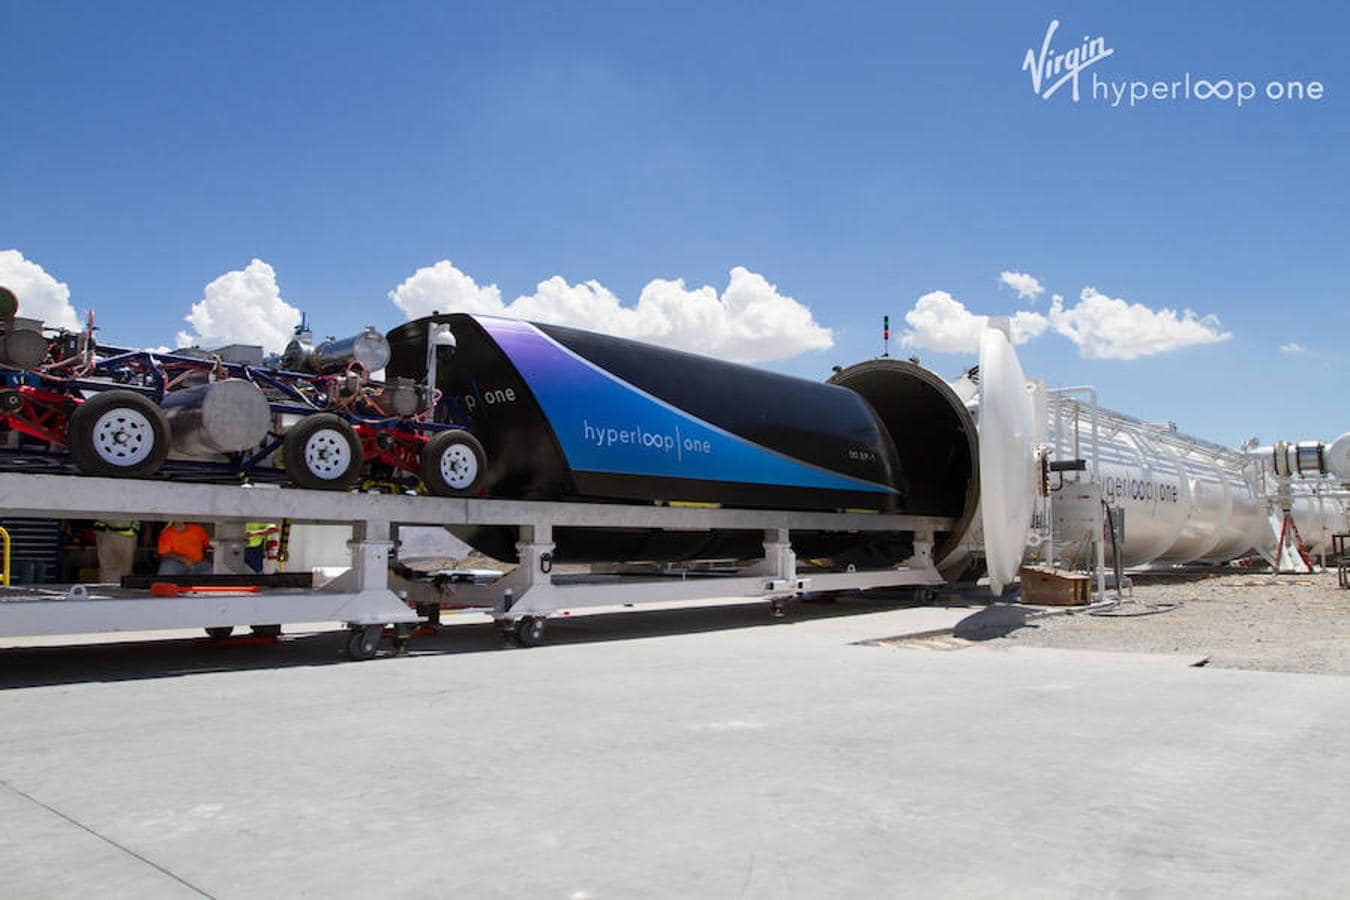 En la actualidad, y según sus datos, Virgin Hyperloop ha logrado ensamblar la cápsula y desarrollar el sistema de levitación y guiado, el sistema de propulsión, el tubo y la generación de vacío. Además, el pasado año alcanzó una velocidad de 387 kilómetros por hora en sus instalaciones de Nevada, según recoge Europa Press.